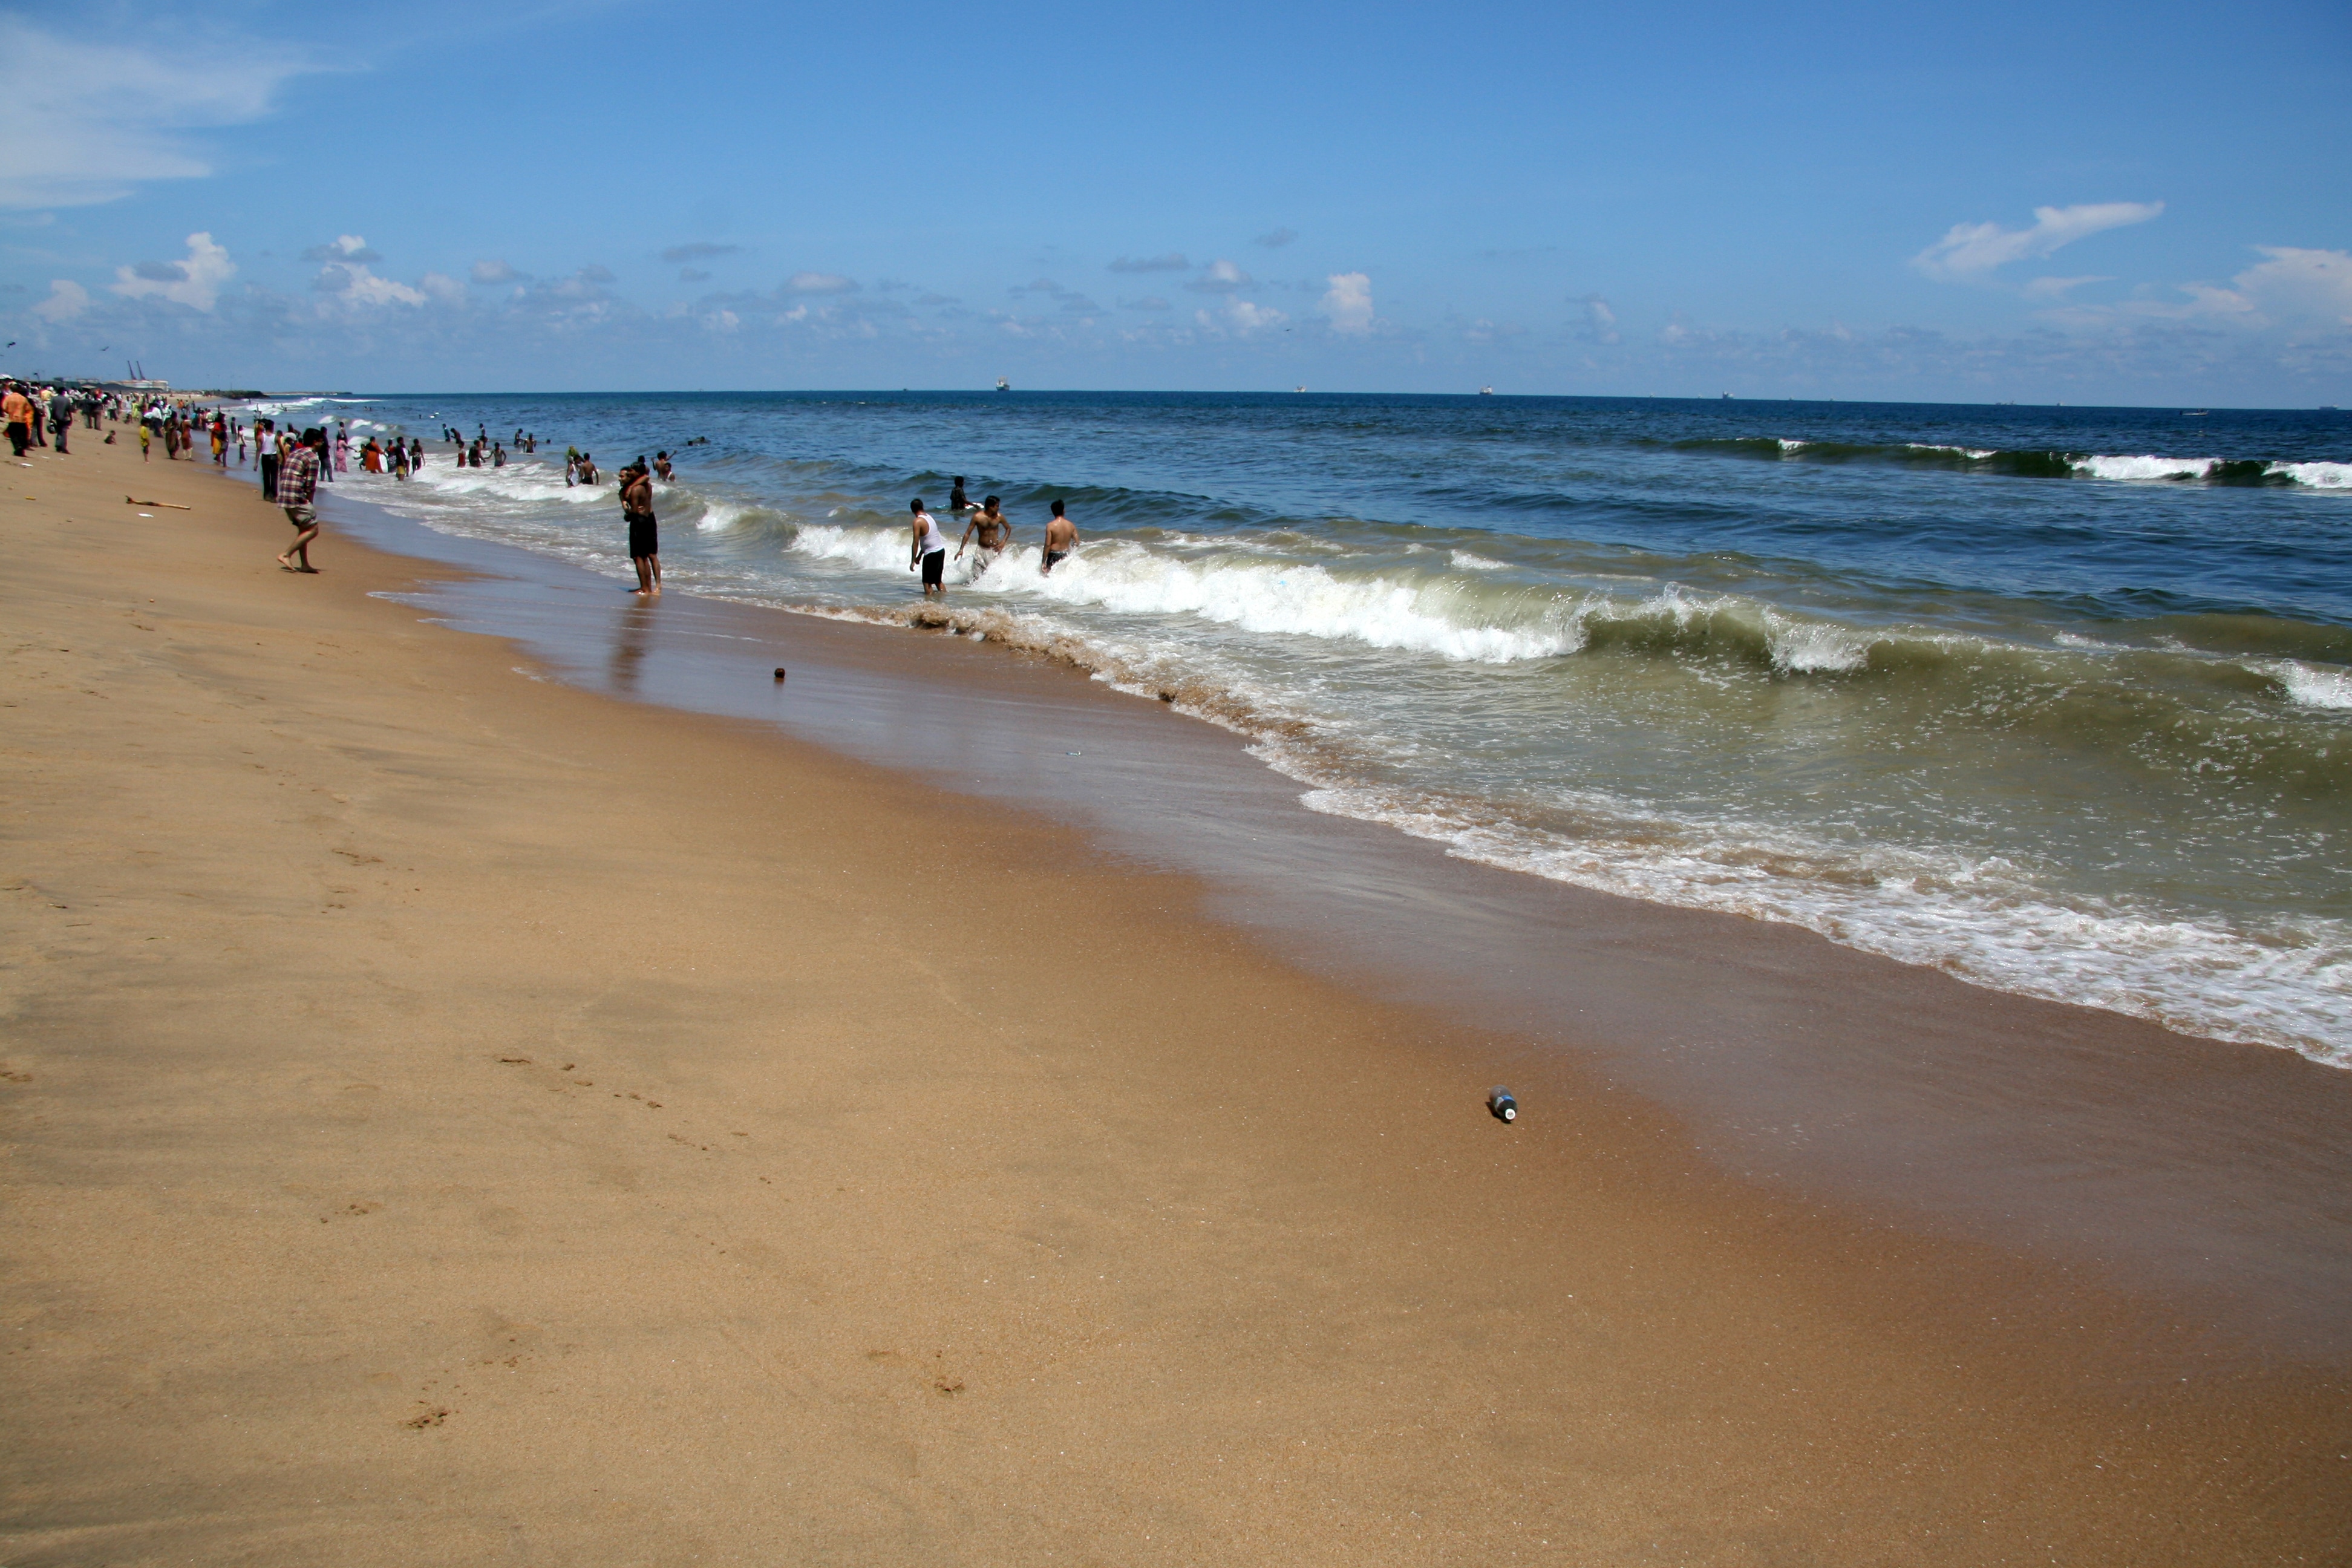 chennai tourist places near marina beach